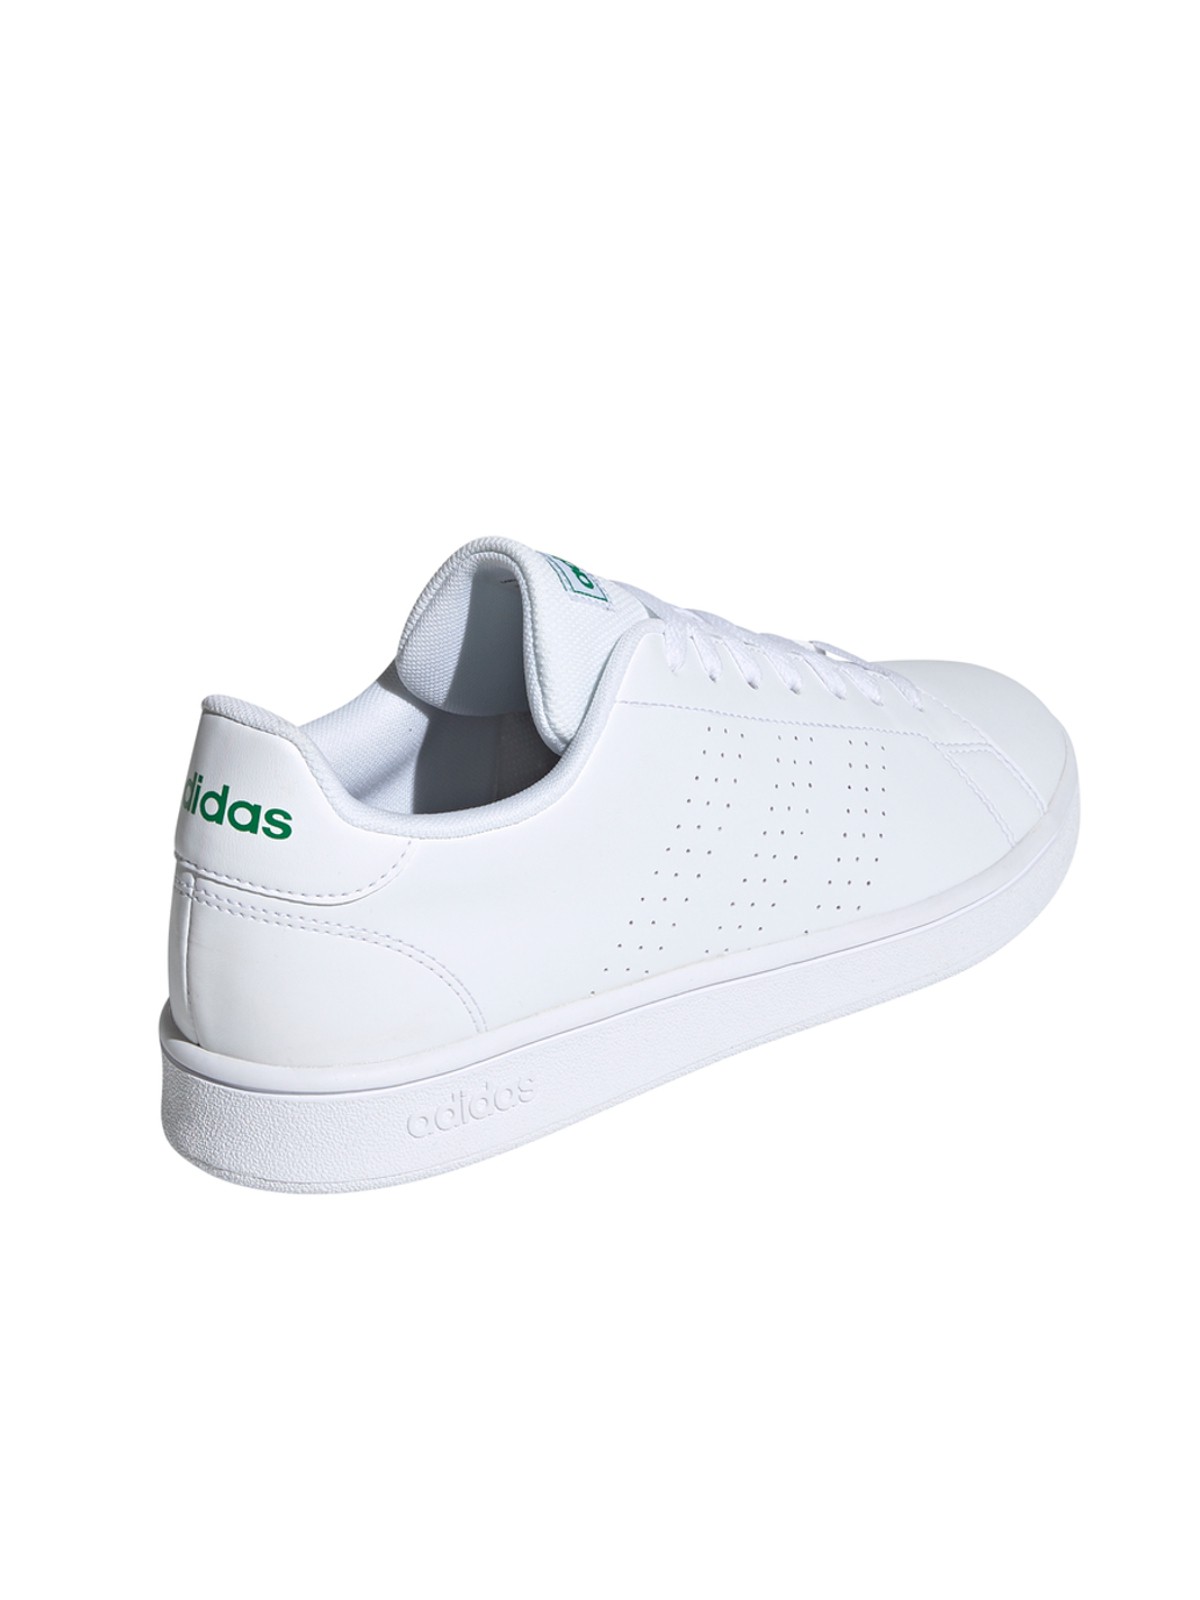 Tennis adidas neo blanc/vert (40-46) - DistriCenter